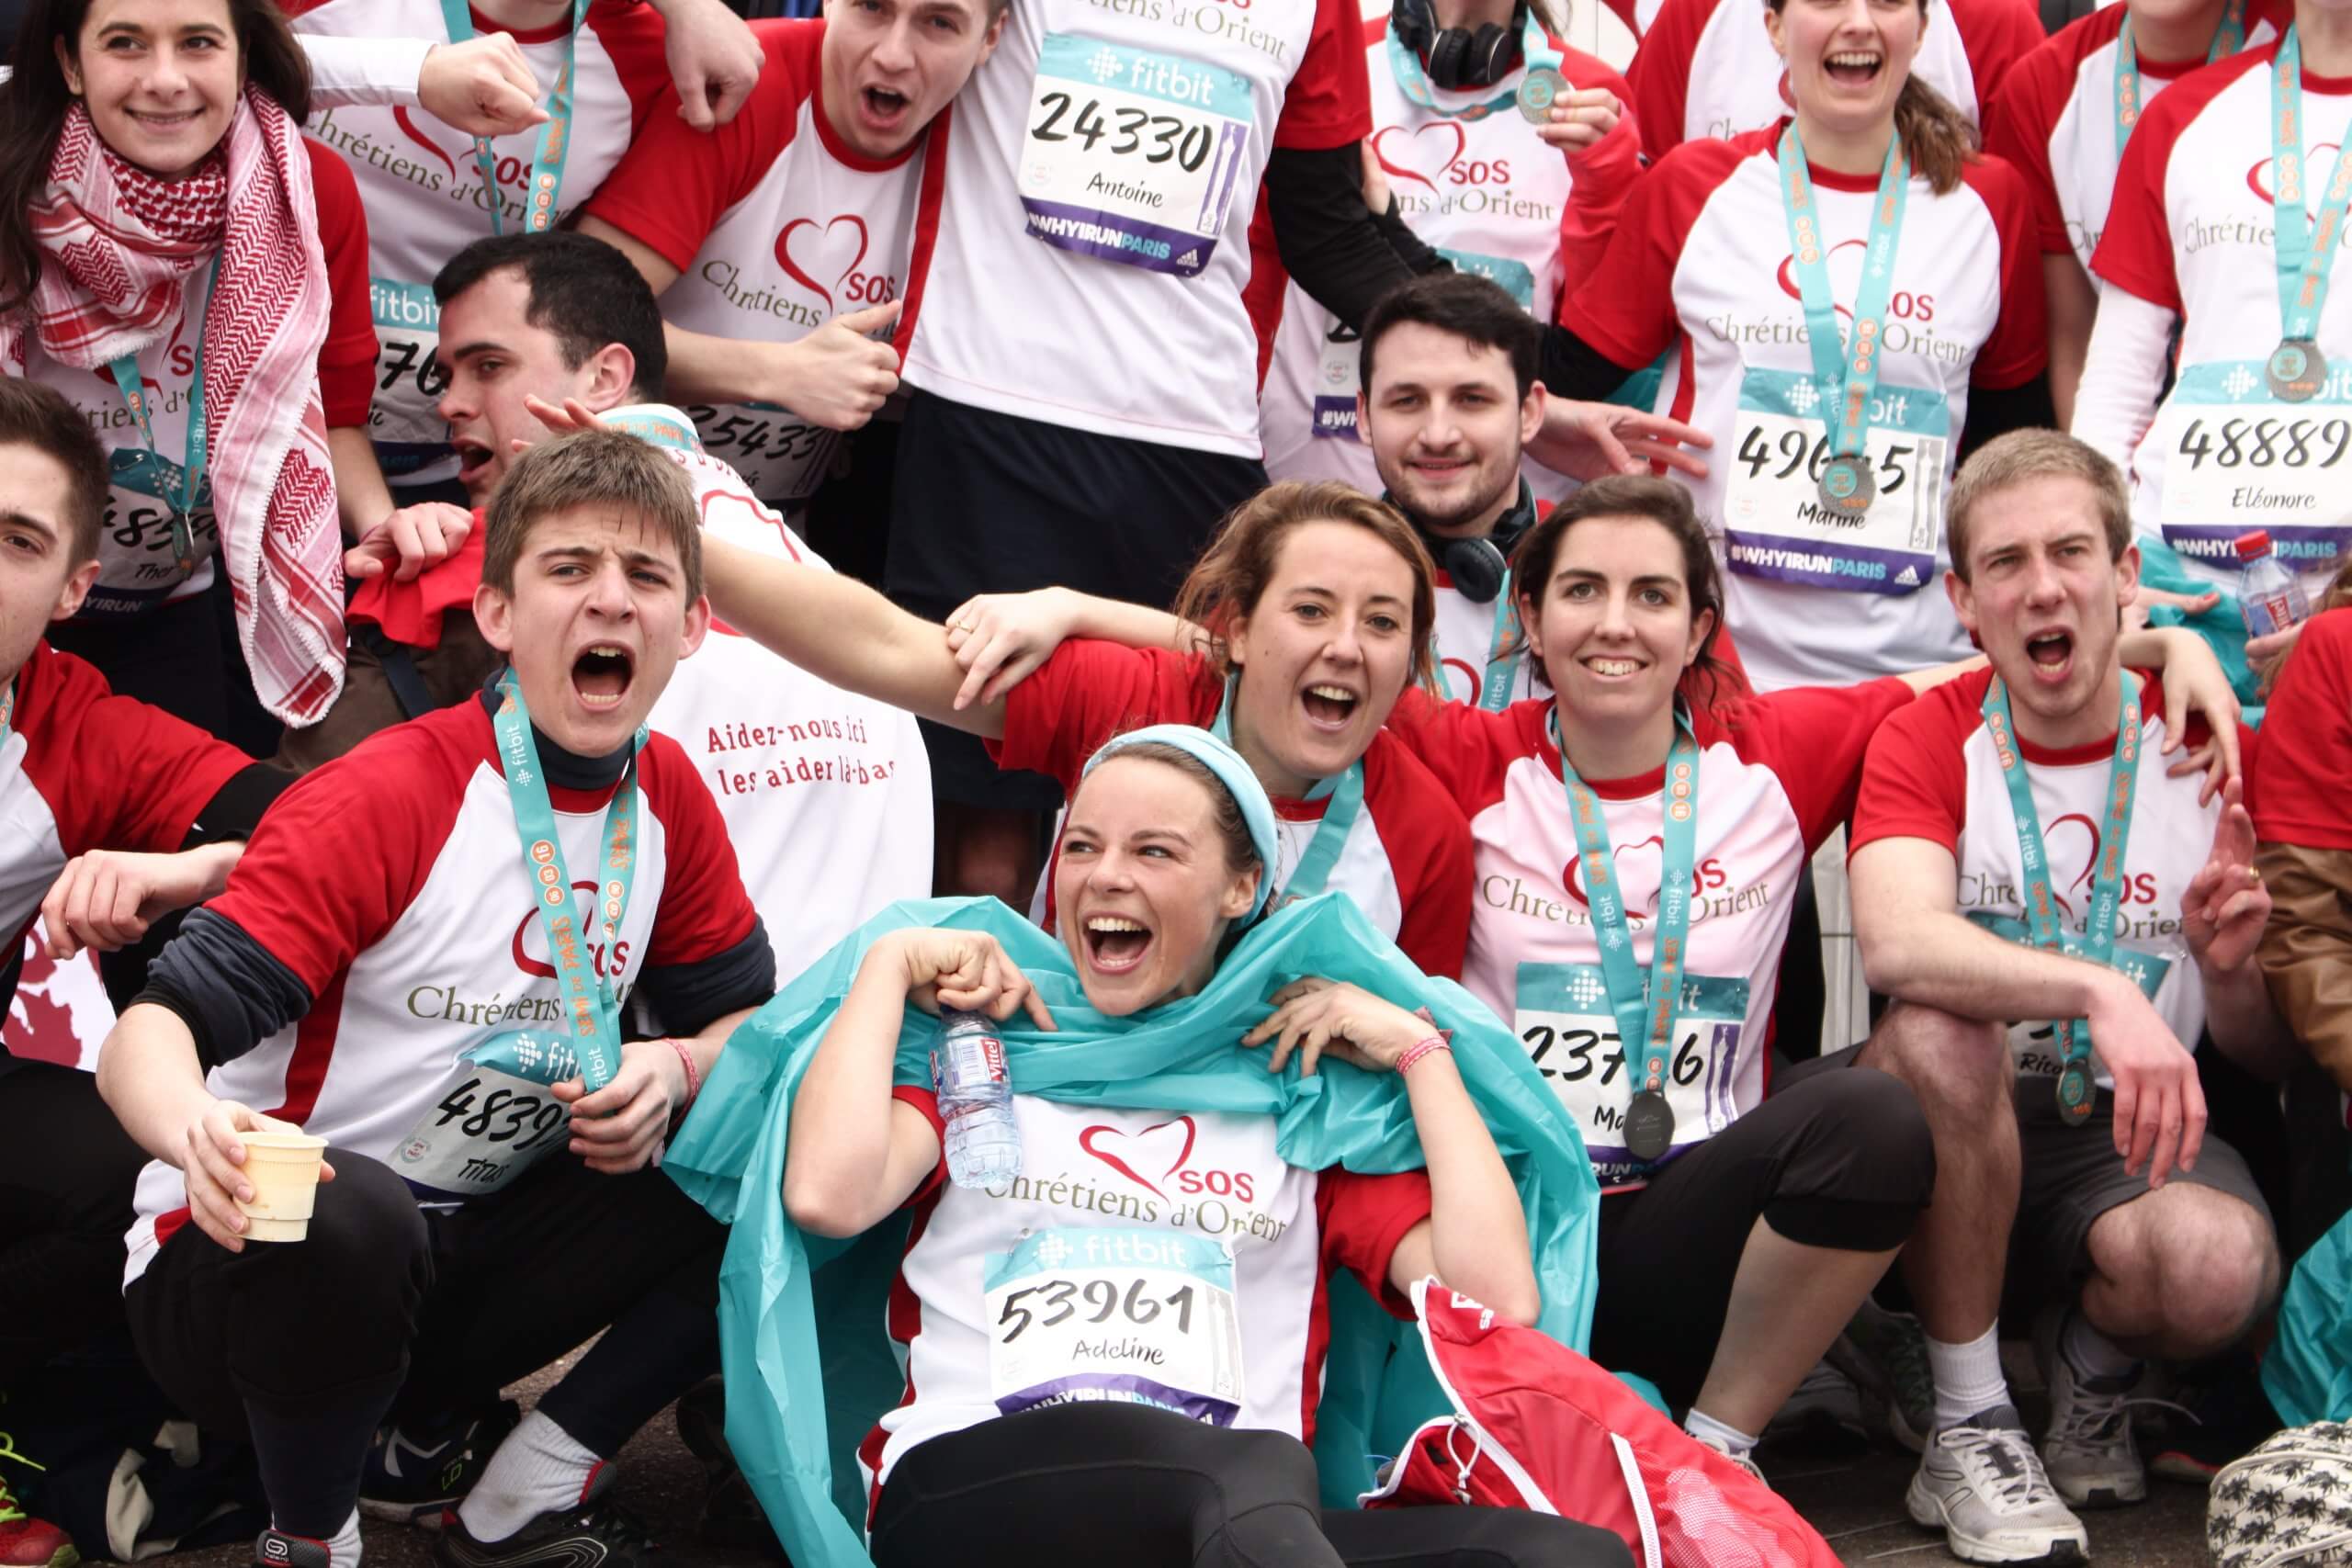 1300 runners participate in the Paris half-marathon under the colours of SOS Chrétiens d'Orient.